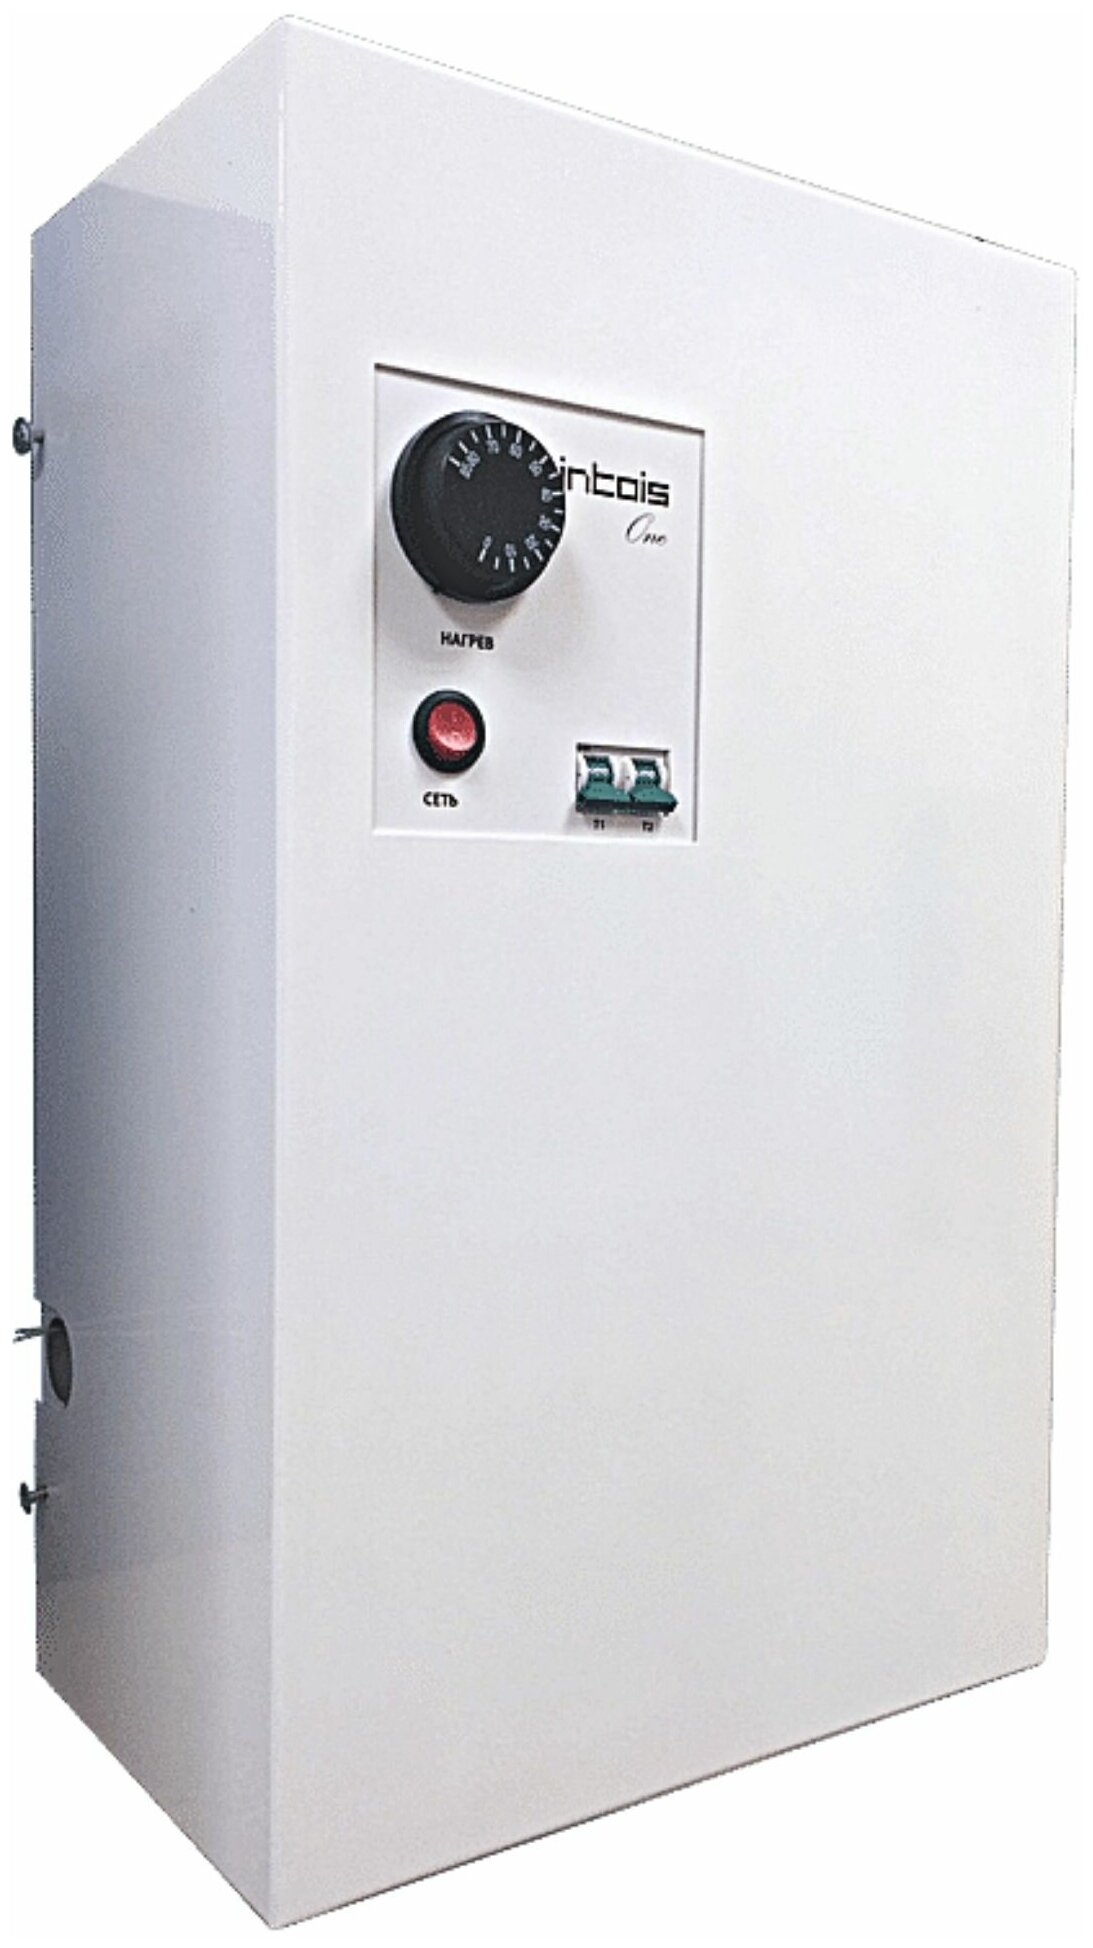 Электрический котел отопления электрокотел Интоис One 9 кВт настенный одноконтурный.